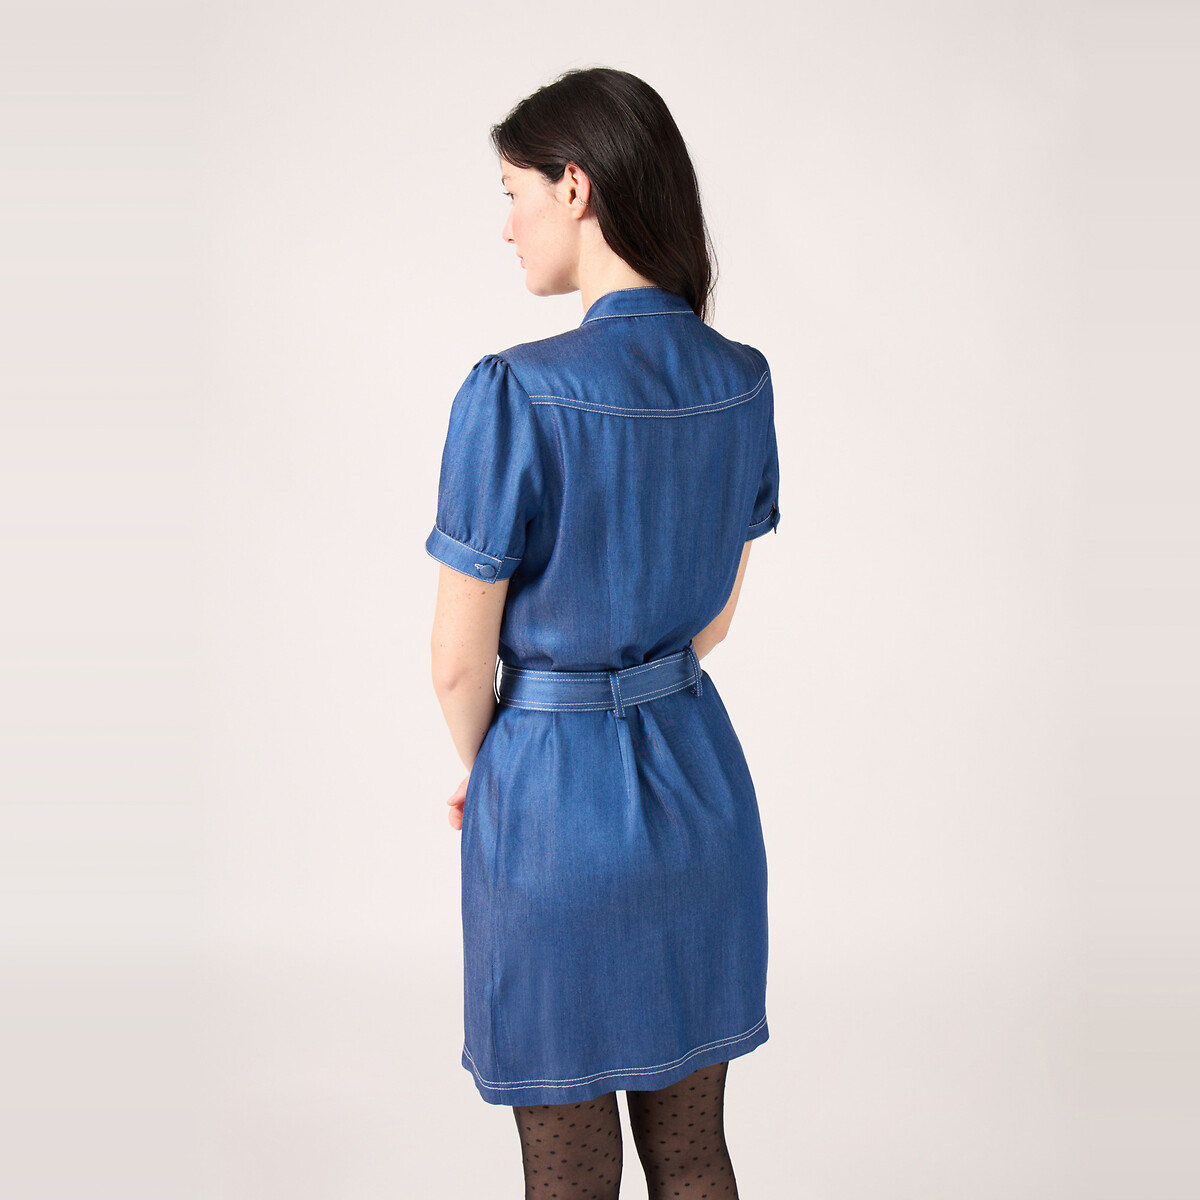 Платье Из вискозы на пуговицах спереди с ремешком 46 синий LaRedoute, размер 46 - фото 3